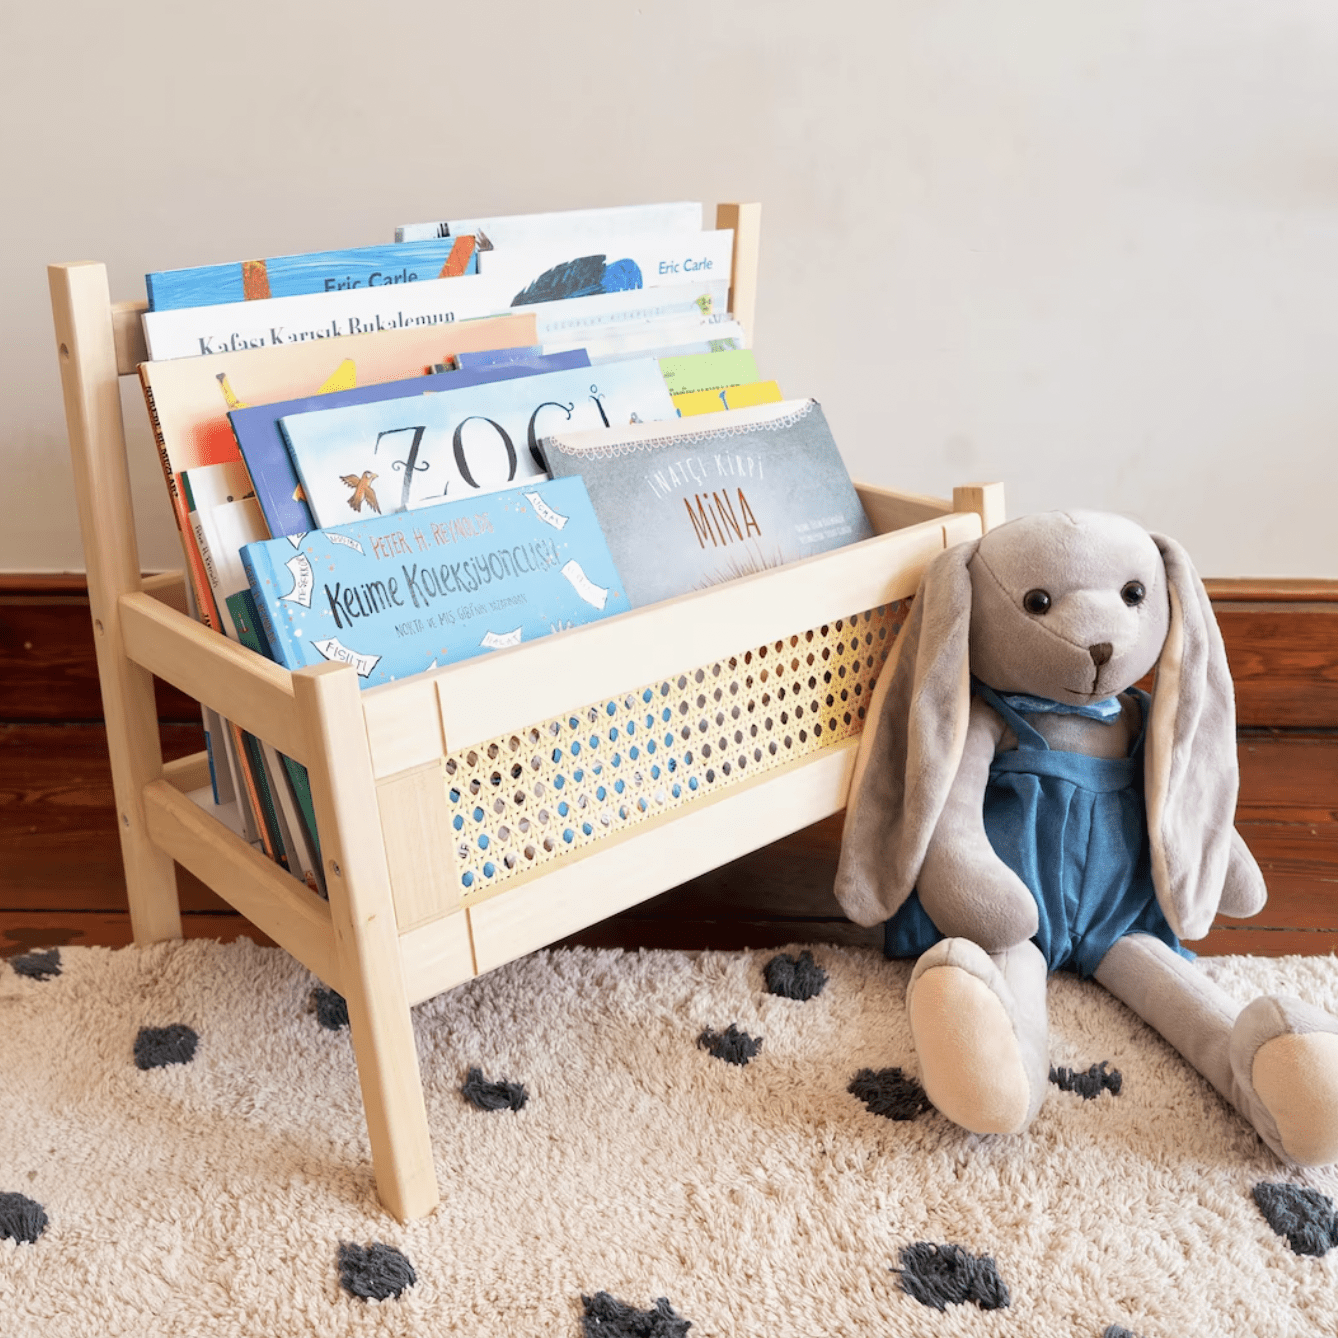 Book Caddy with Shelf, Bookshelf with Storage